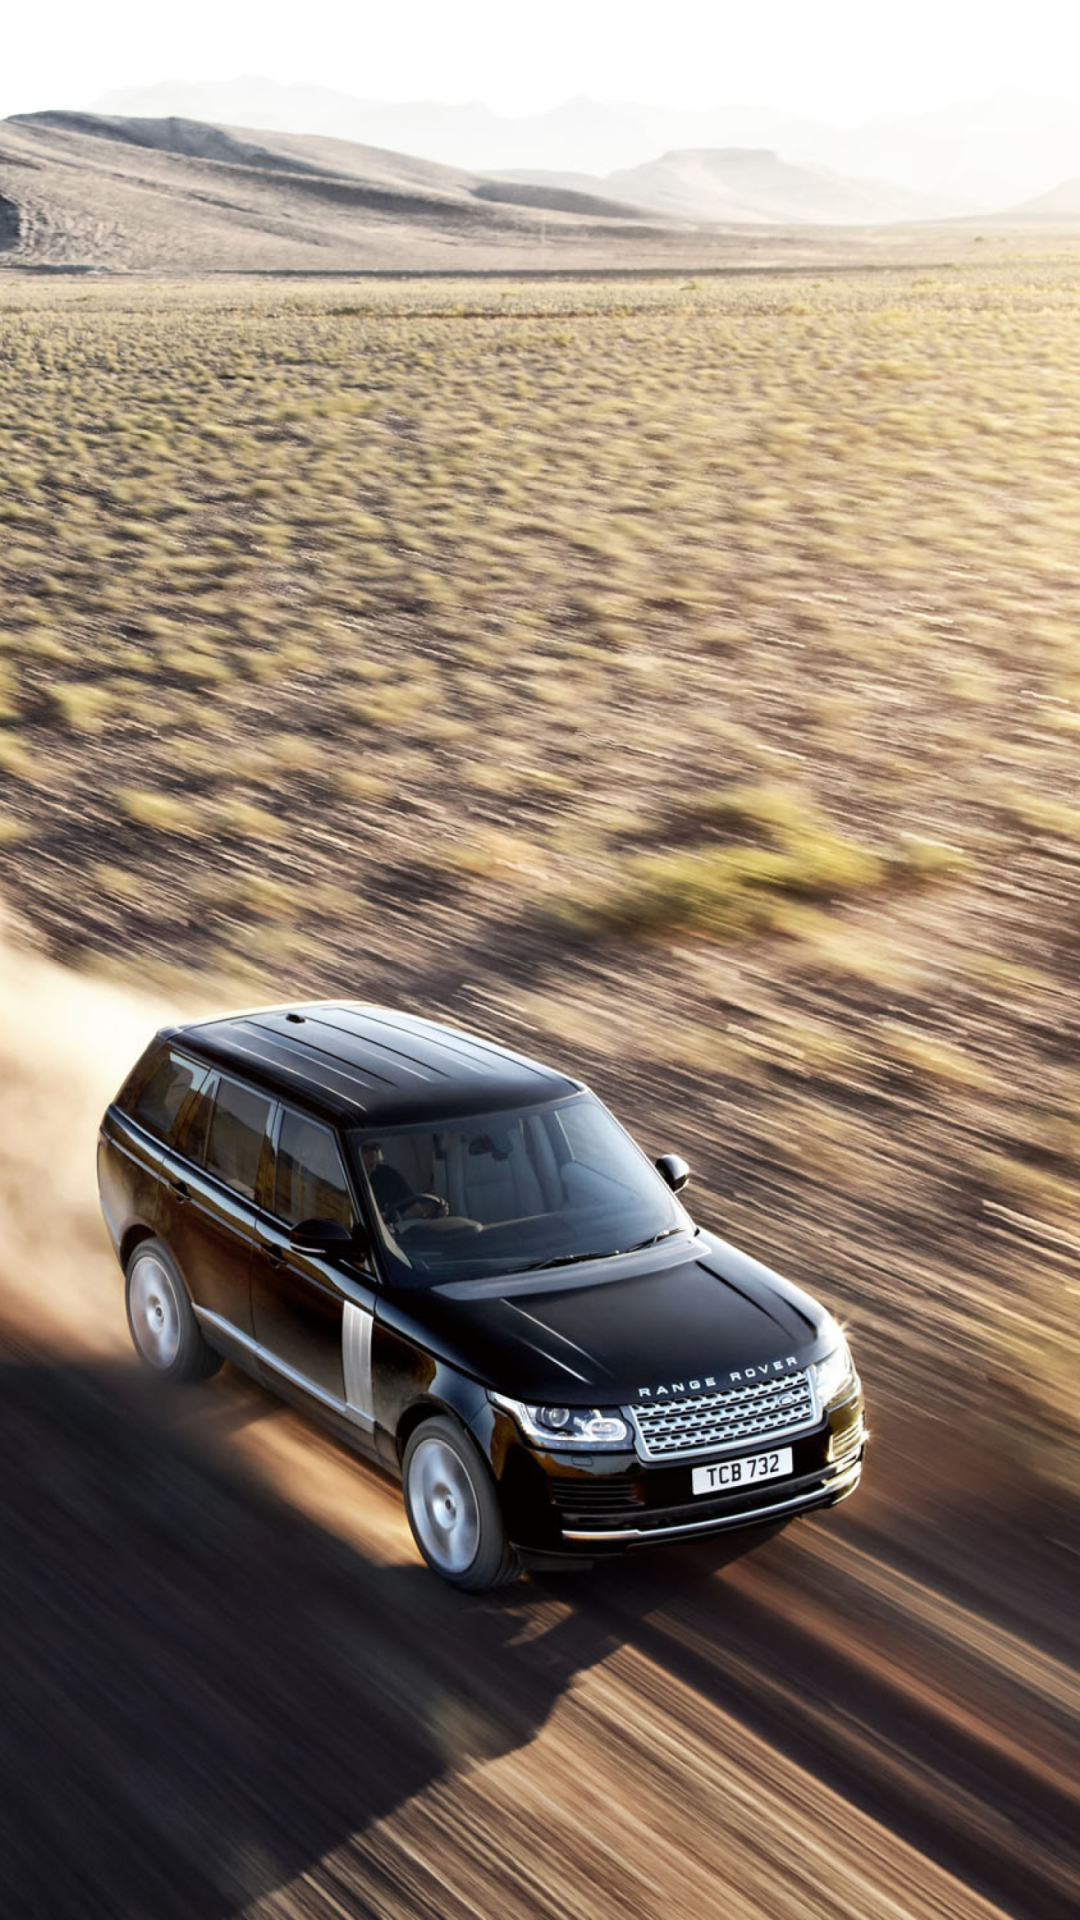 Land Rover In Desert screenshot #1 1080x1920